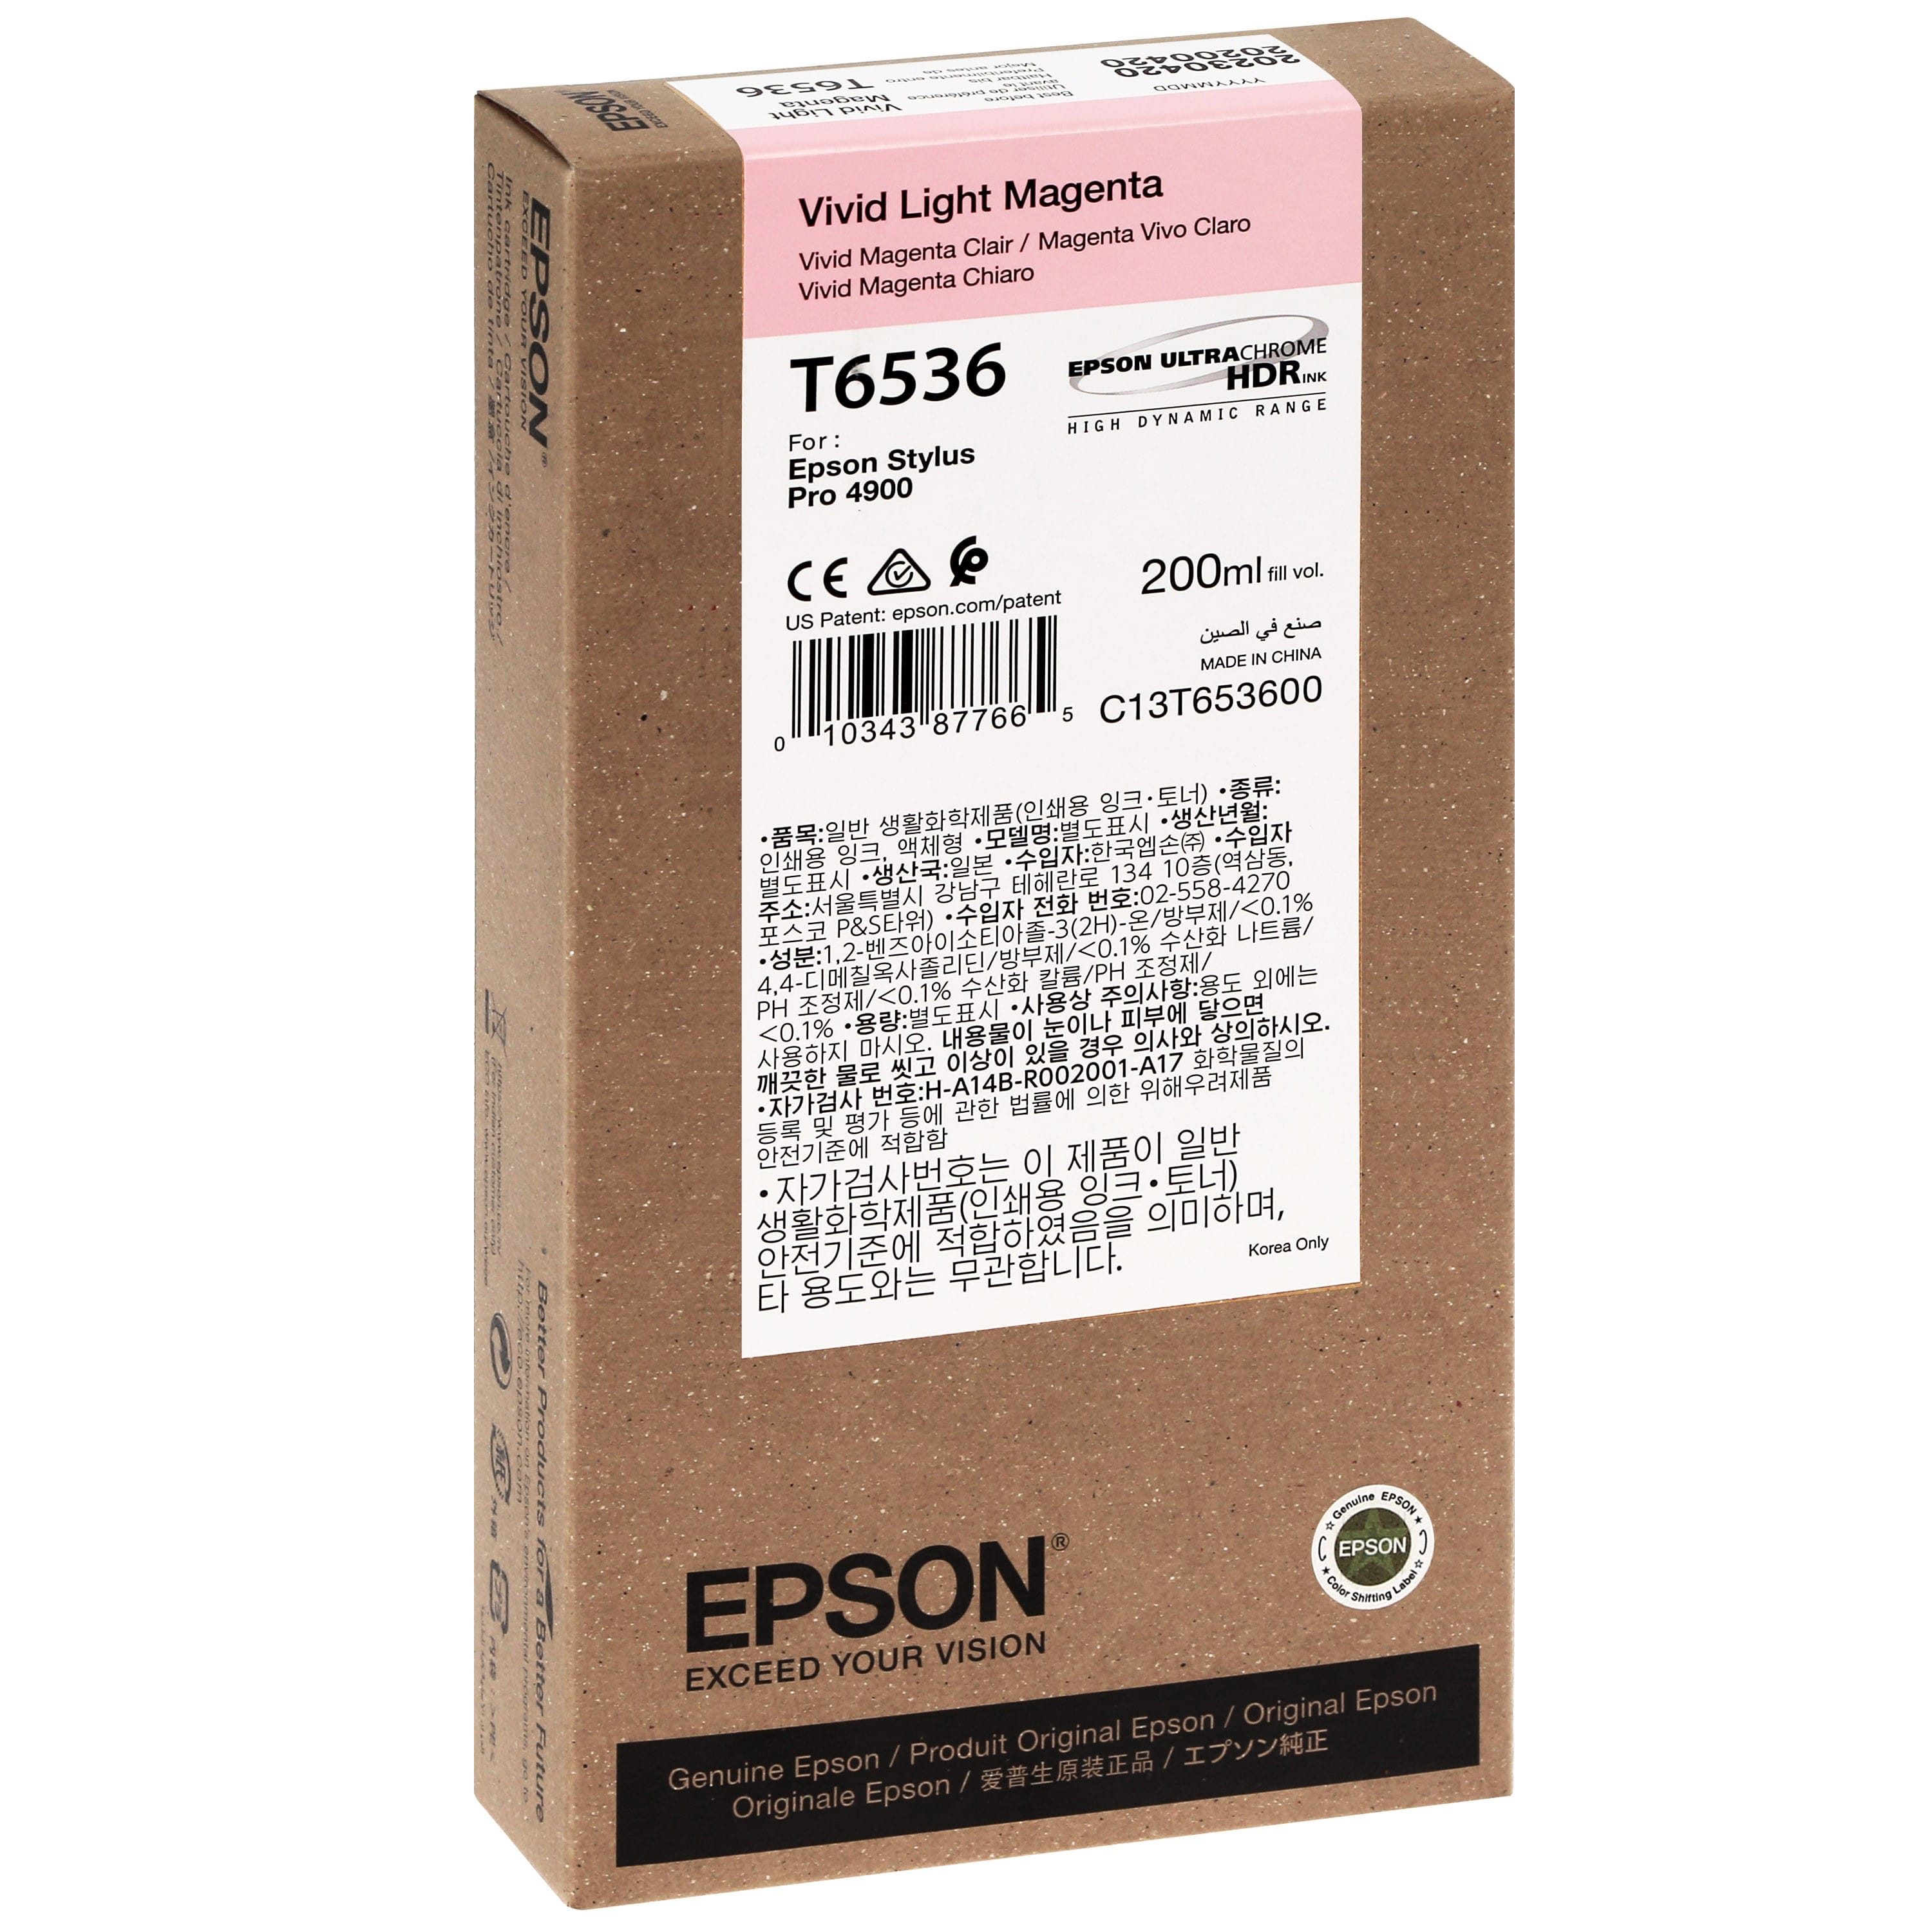 EPSON - Cartouche d'encre traceur T6536 Pour imprimante 4900 Vivid Magenta clair - 200ml